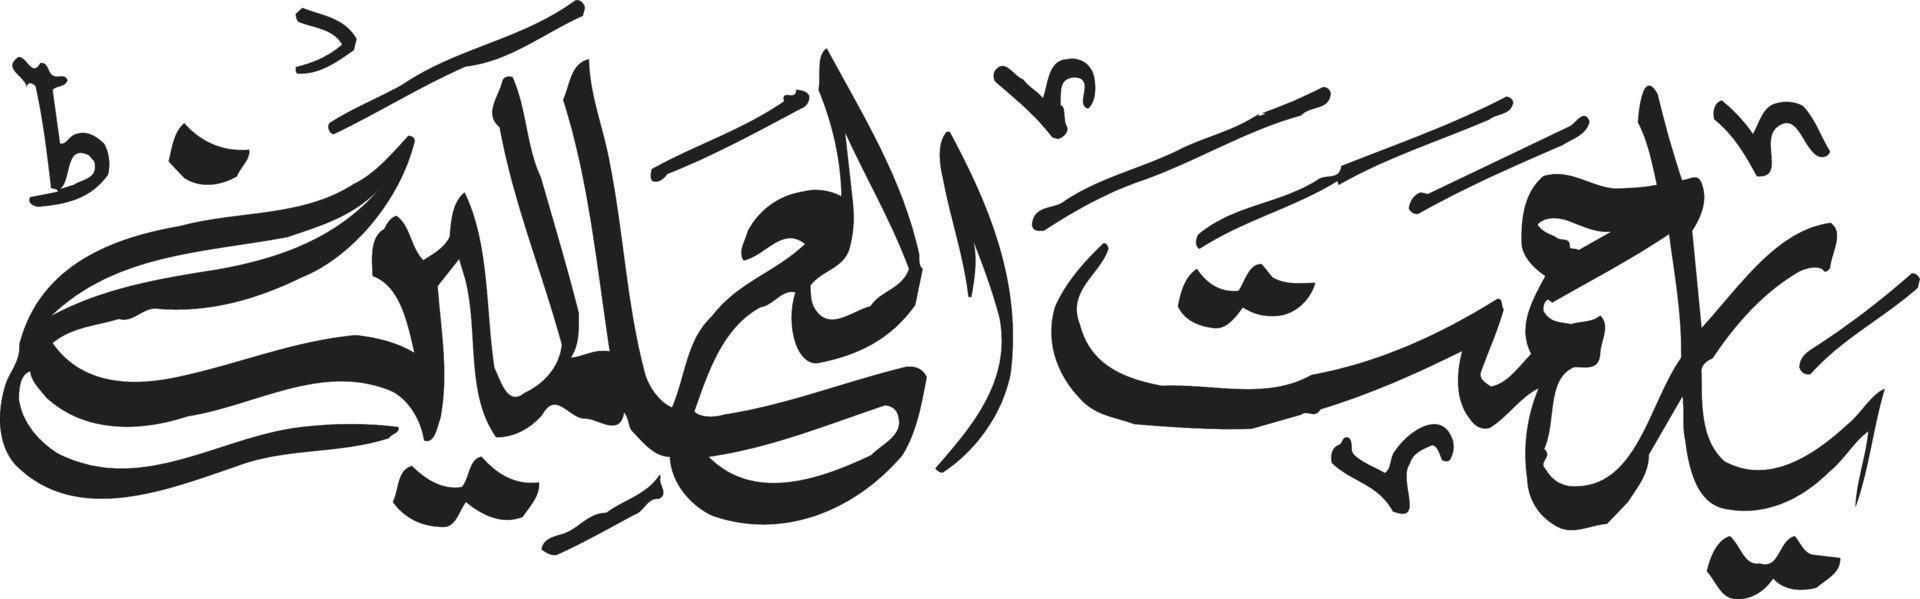 ya rahmat al alameen calligraphie islamique vecteur libre